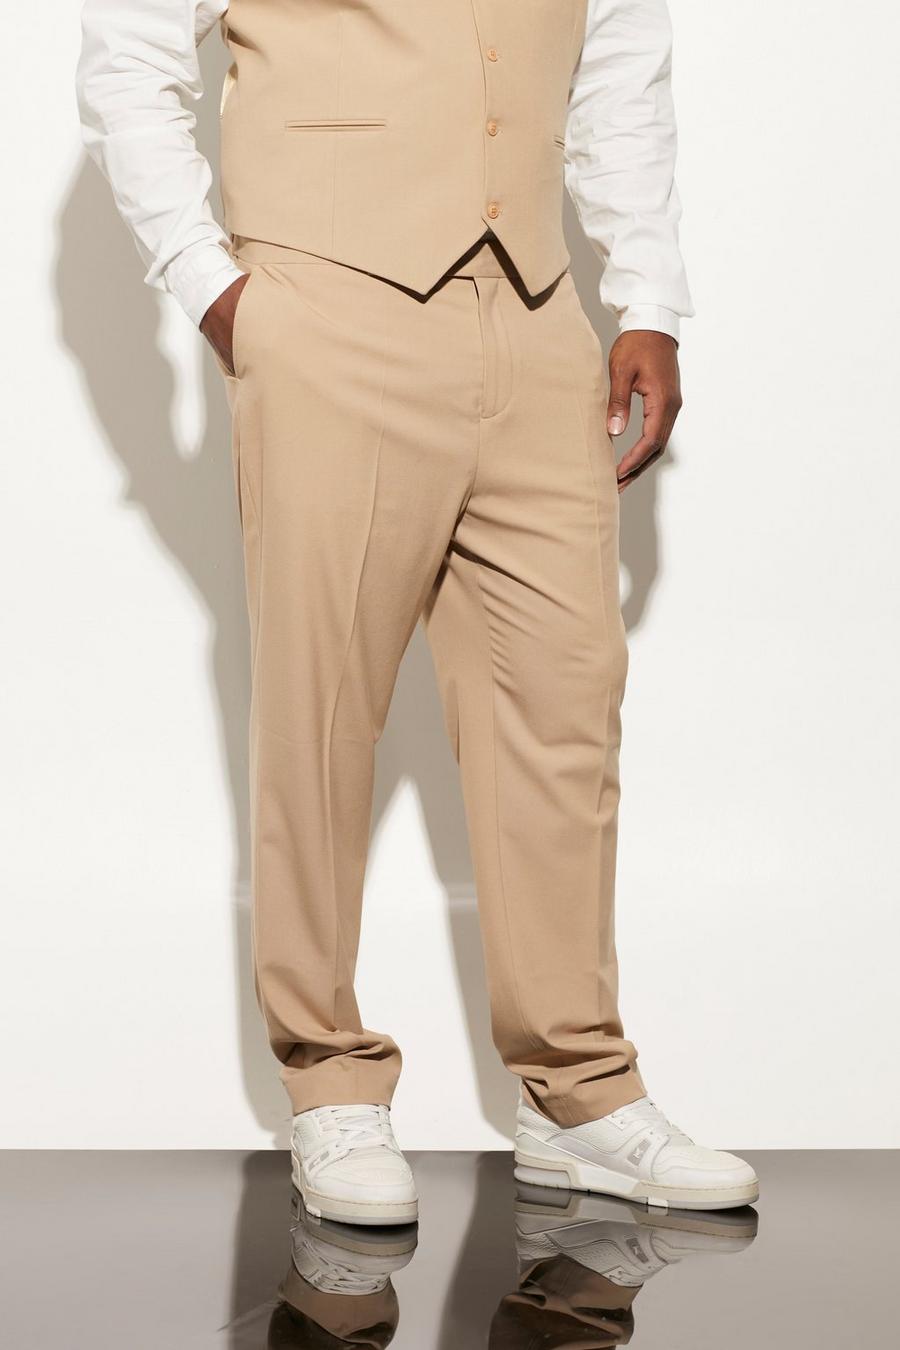 בז' beis מכנסי חליפה קרופ בגזרה צרה, מידות גדולות